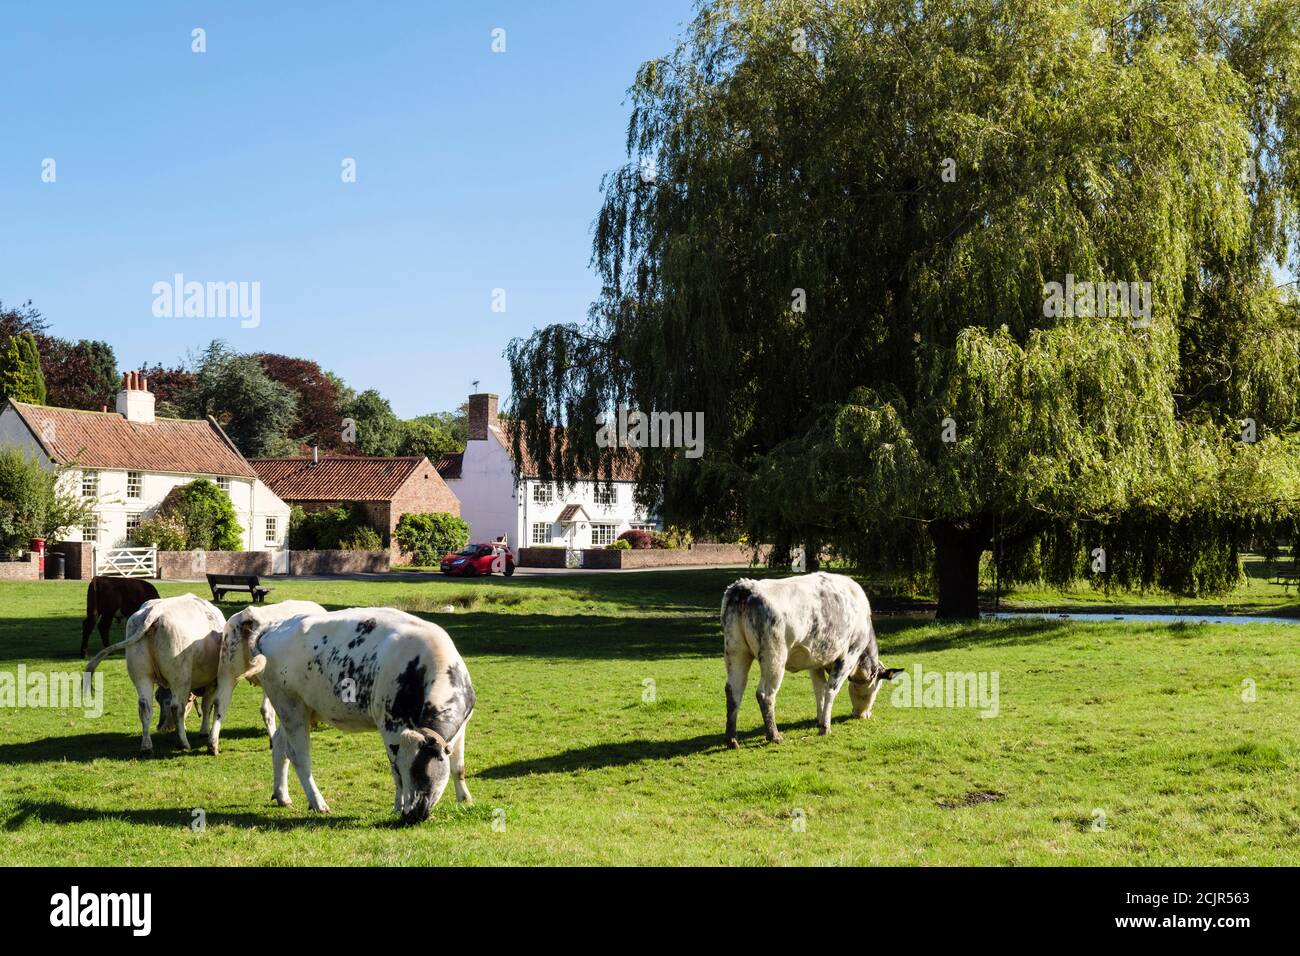 Scène rurale avec bétail de gamme libre paître sur des terres communes sur un village de campagne vert. Nun Monkton, York, Yorkshire du Nord, Angleterre, Royaume-Uni, Grande-Bretagne Banque D'Images